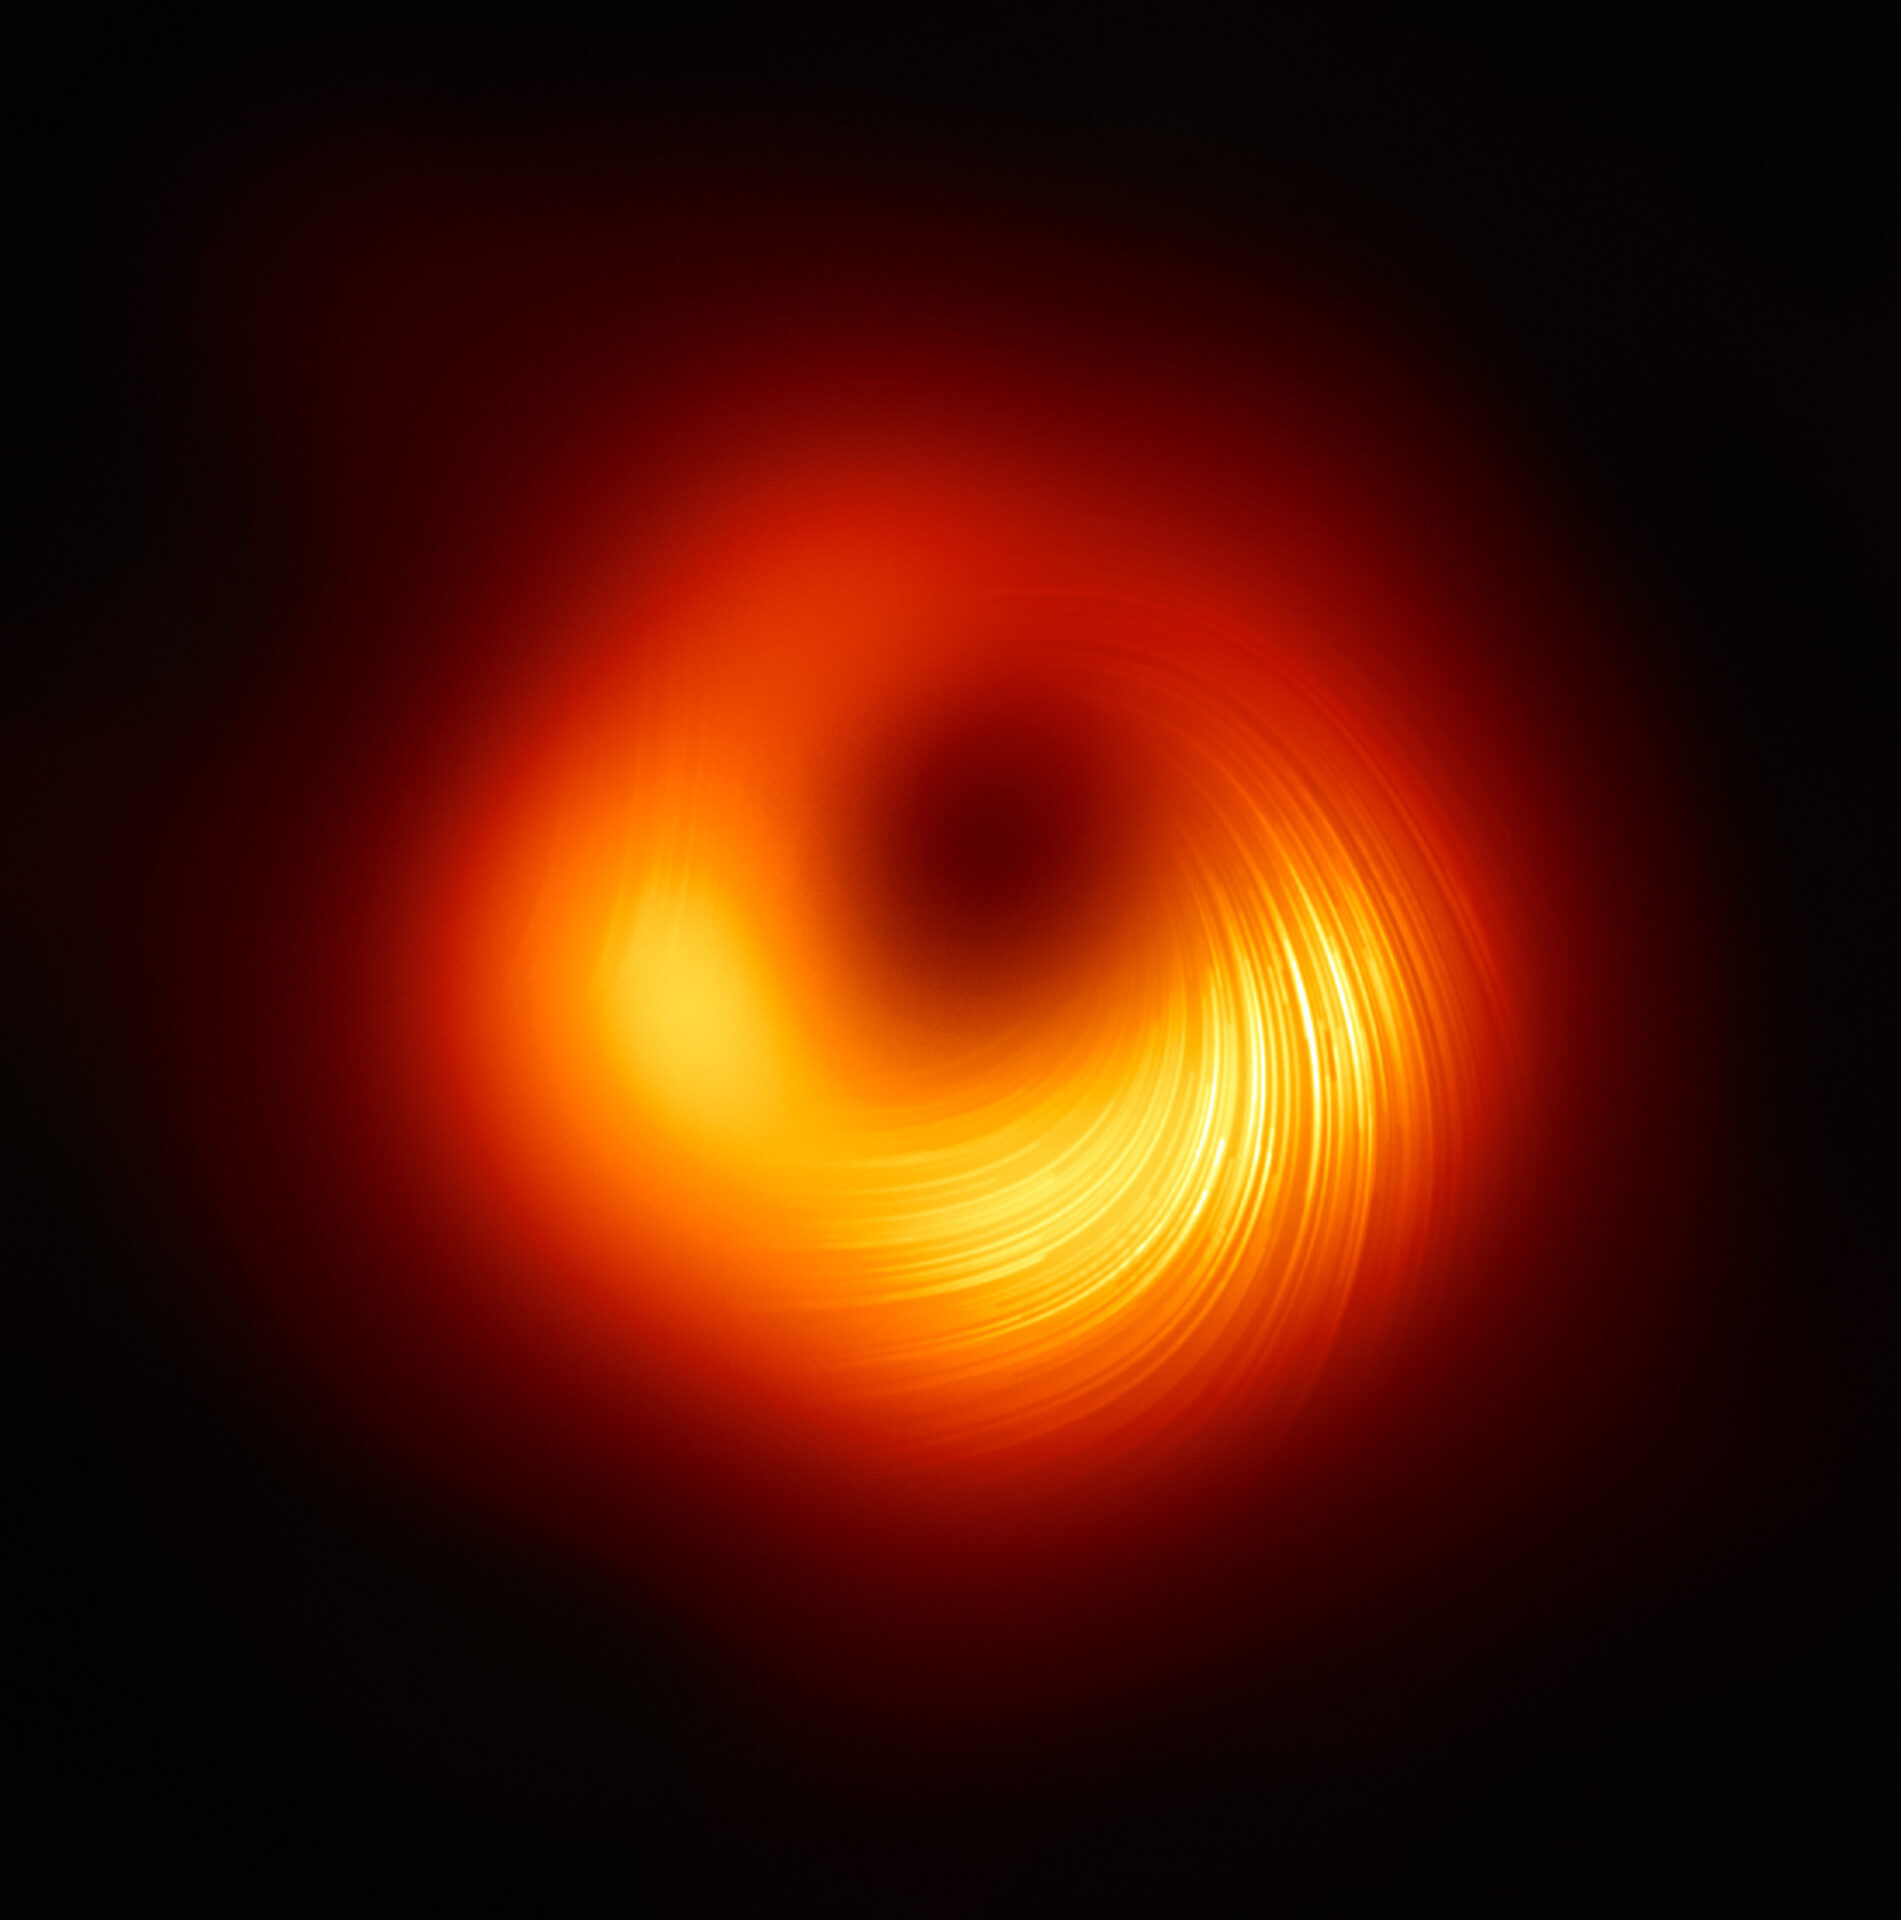 Η πρώτη μαύρη τρύπα που απεικονίστηκε ποτέ από ανθρώπους περιέχει στριμμένα μαγνητικά πεδία και οι επιστήμονες είναι ενθουσιασμένοι